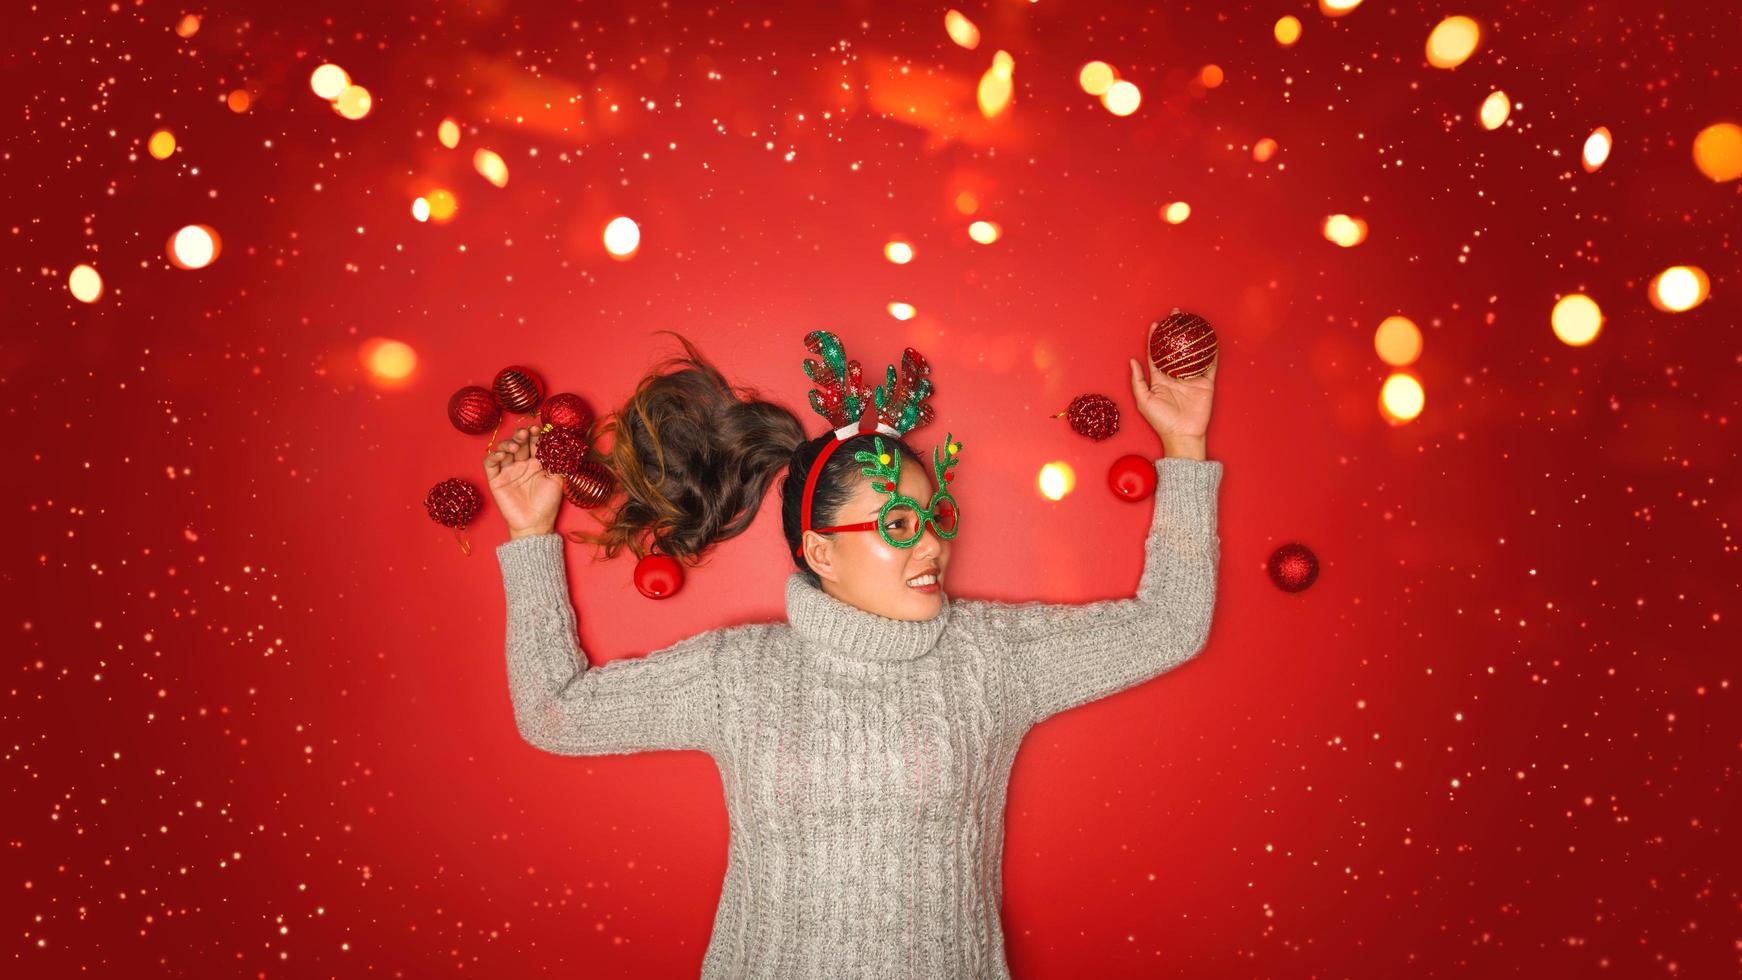 Weihnachten neues Jahr. junge Frau, gekleidet in warmen Pullover mit Requisiten Ball rot mit Weihnachtsschmuck im Urlaub auf glänzendem rotem Hintergrund. Konzept Frohe Weihnachten. foto